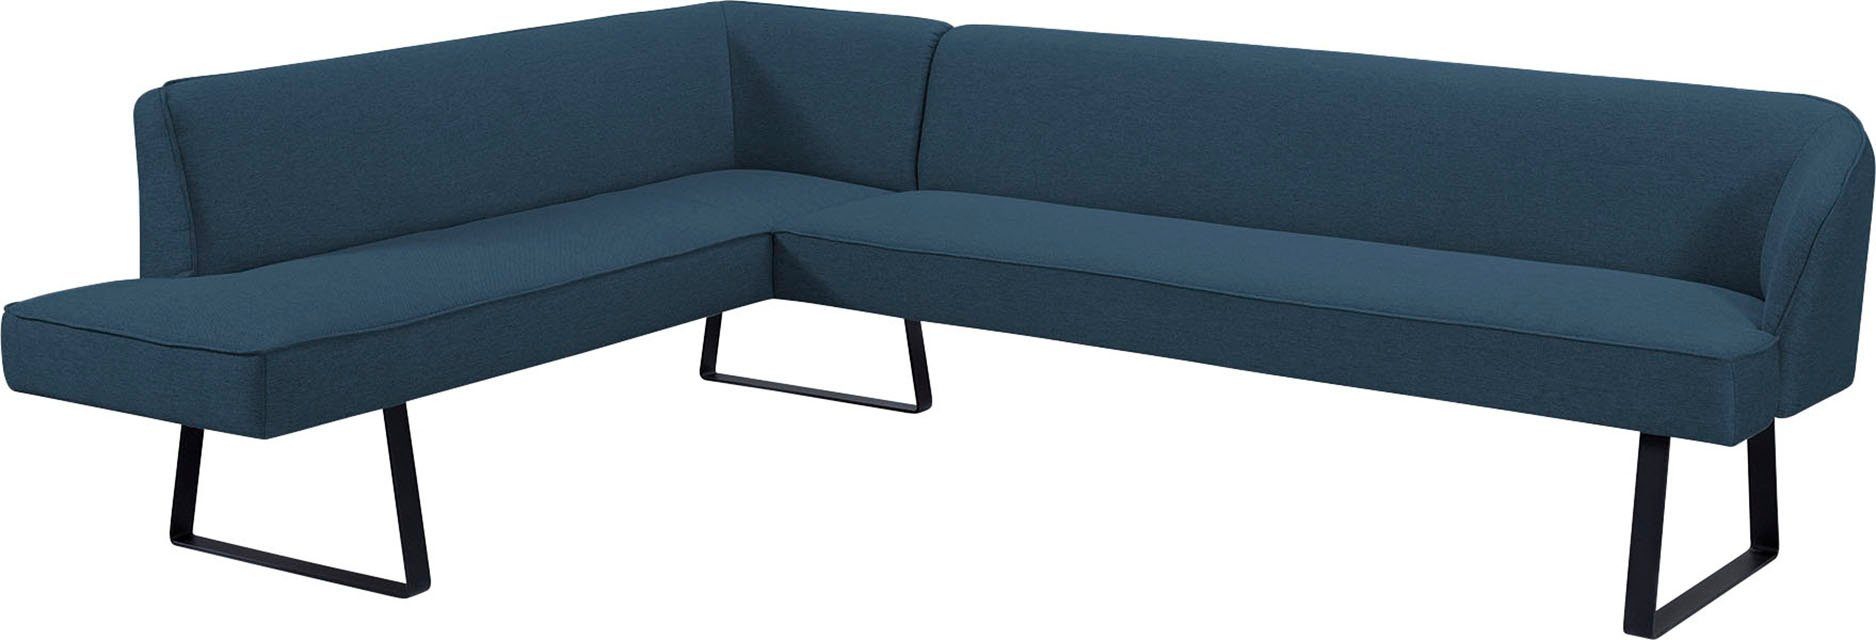 exxpo - sofa fashion und Bezug Metallfüßen, Americano, mit Qualitäten Keder Eckbank in verschiedenen